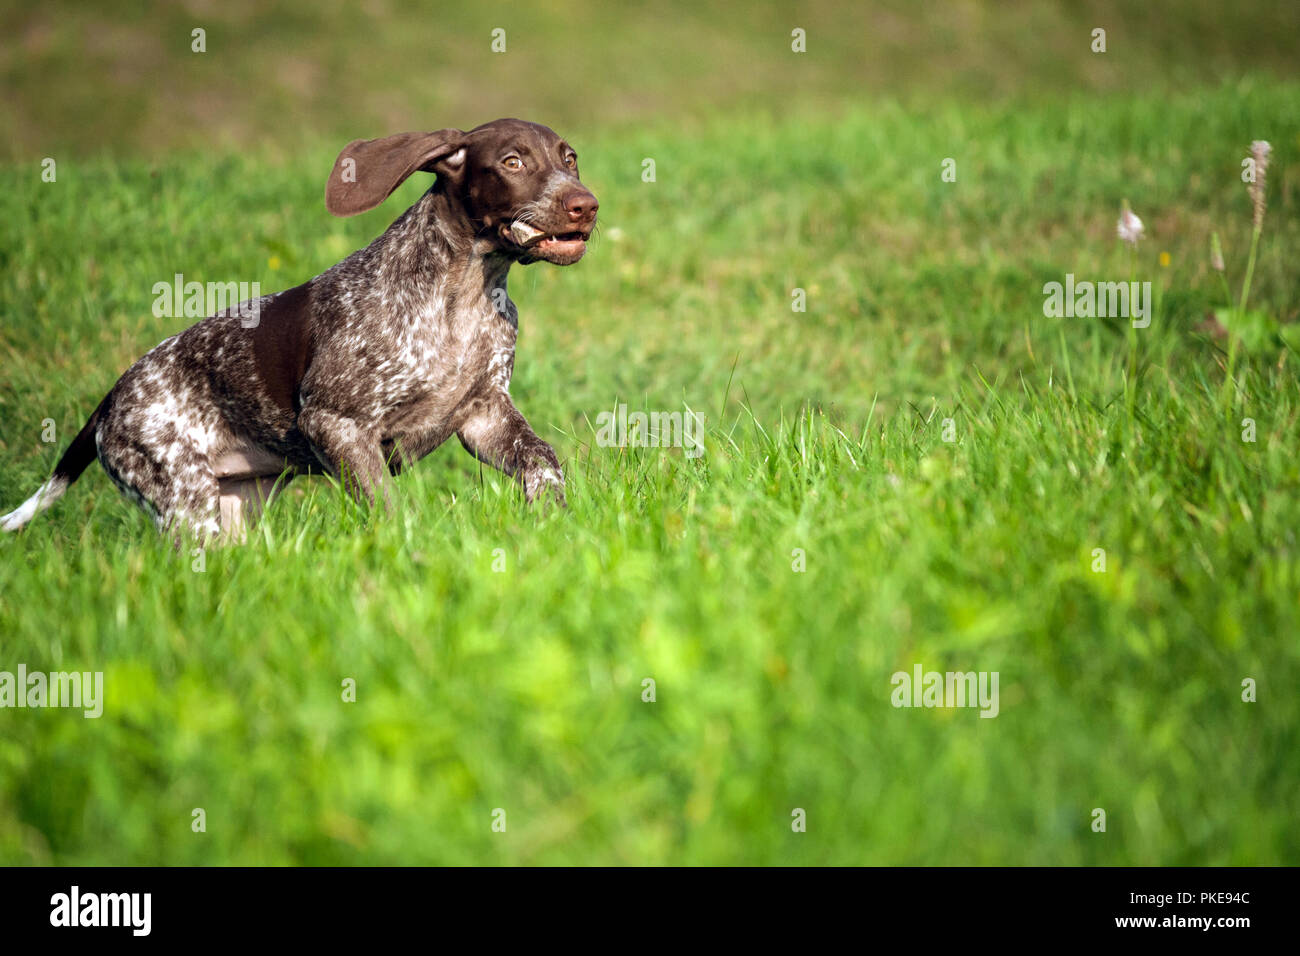 Deutsch Kurzhaar Pointer, deutschen kurtshaar Eine braun getupft Welpe, das Tier verläuft entlang dem grünen Gras auf dem Feld mit einem großen Stein Stockfoto